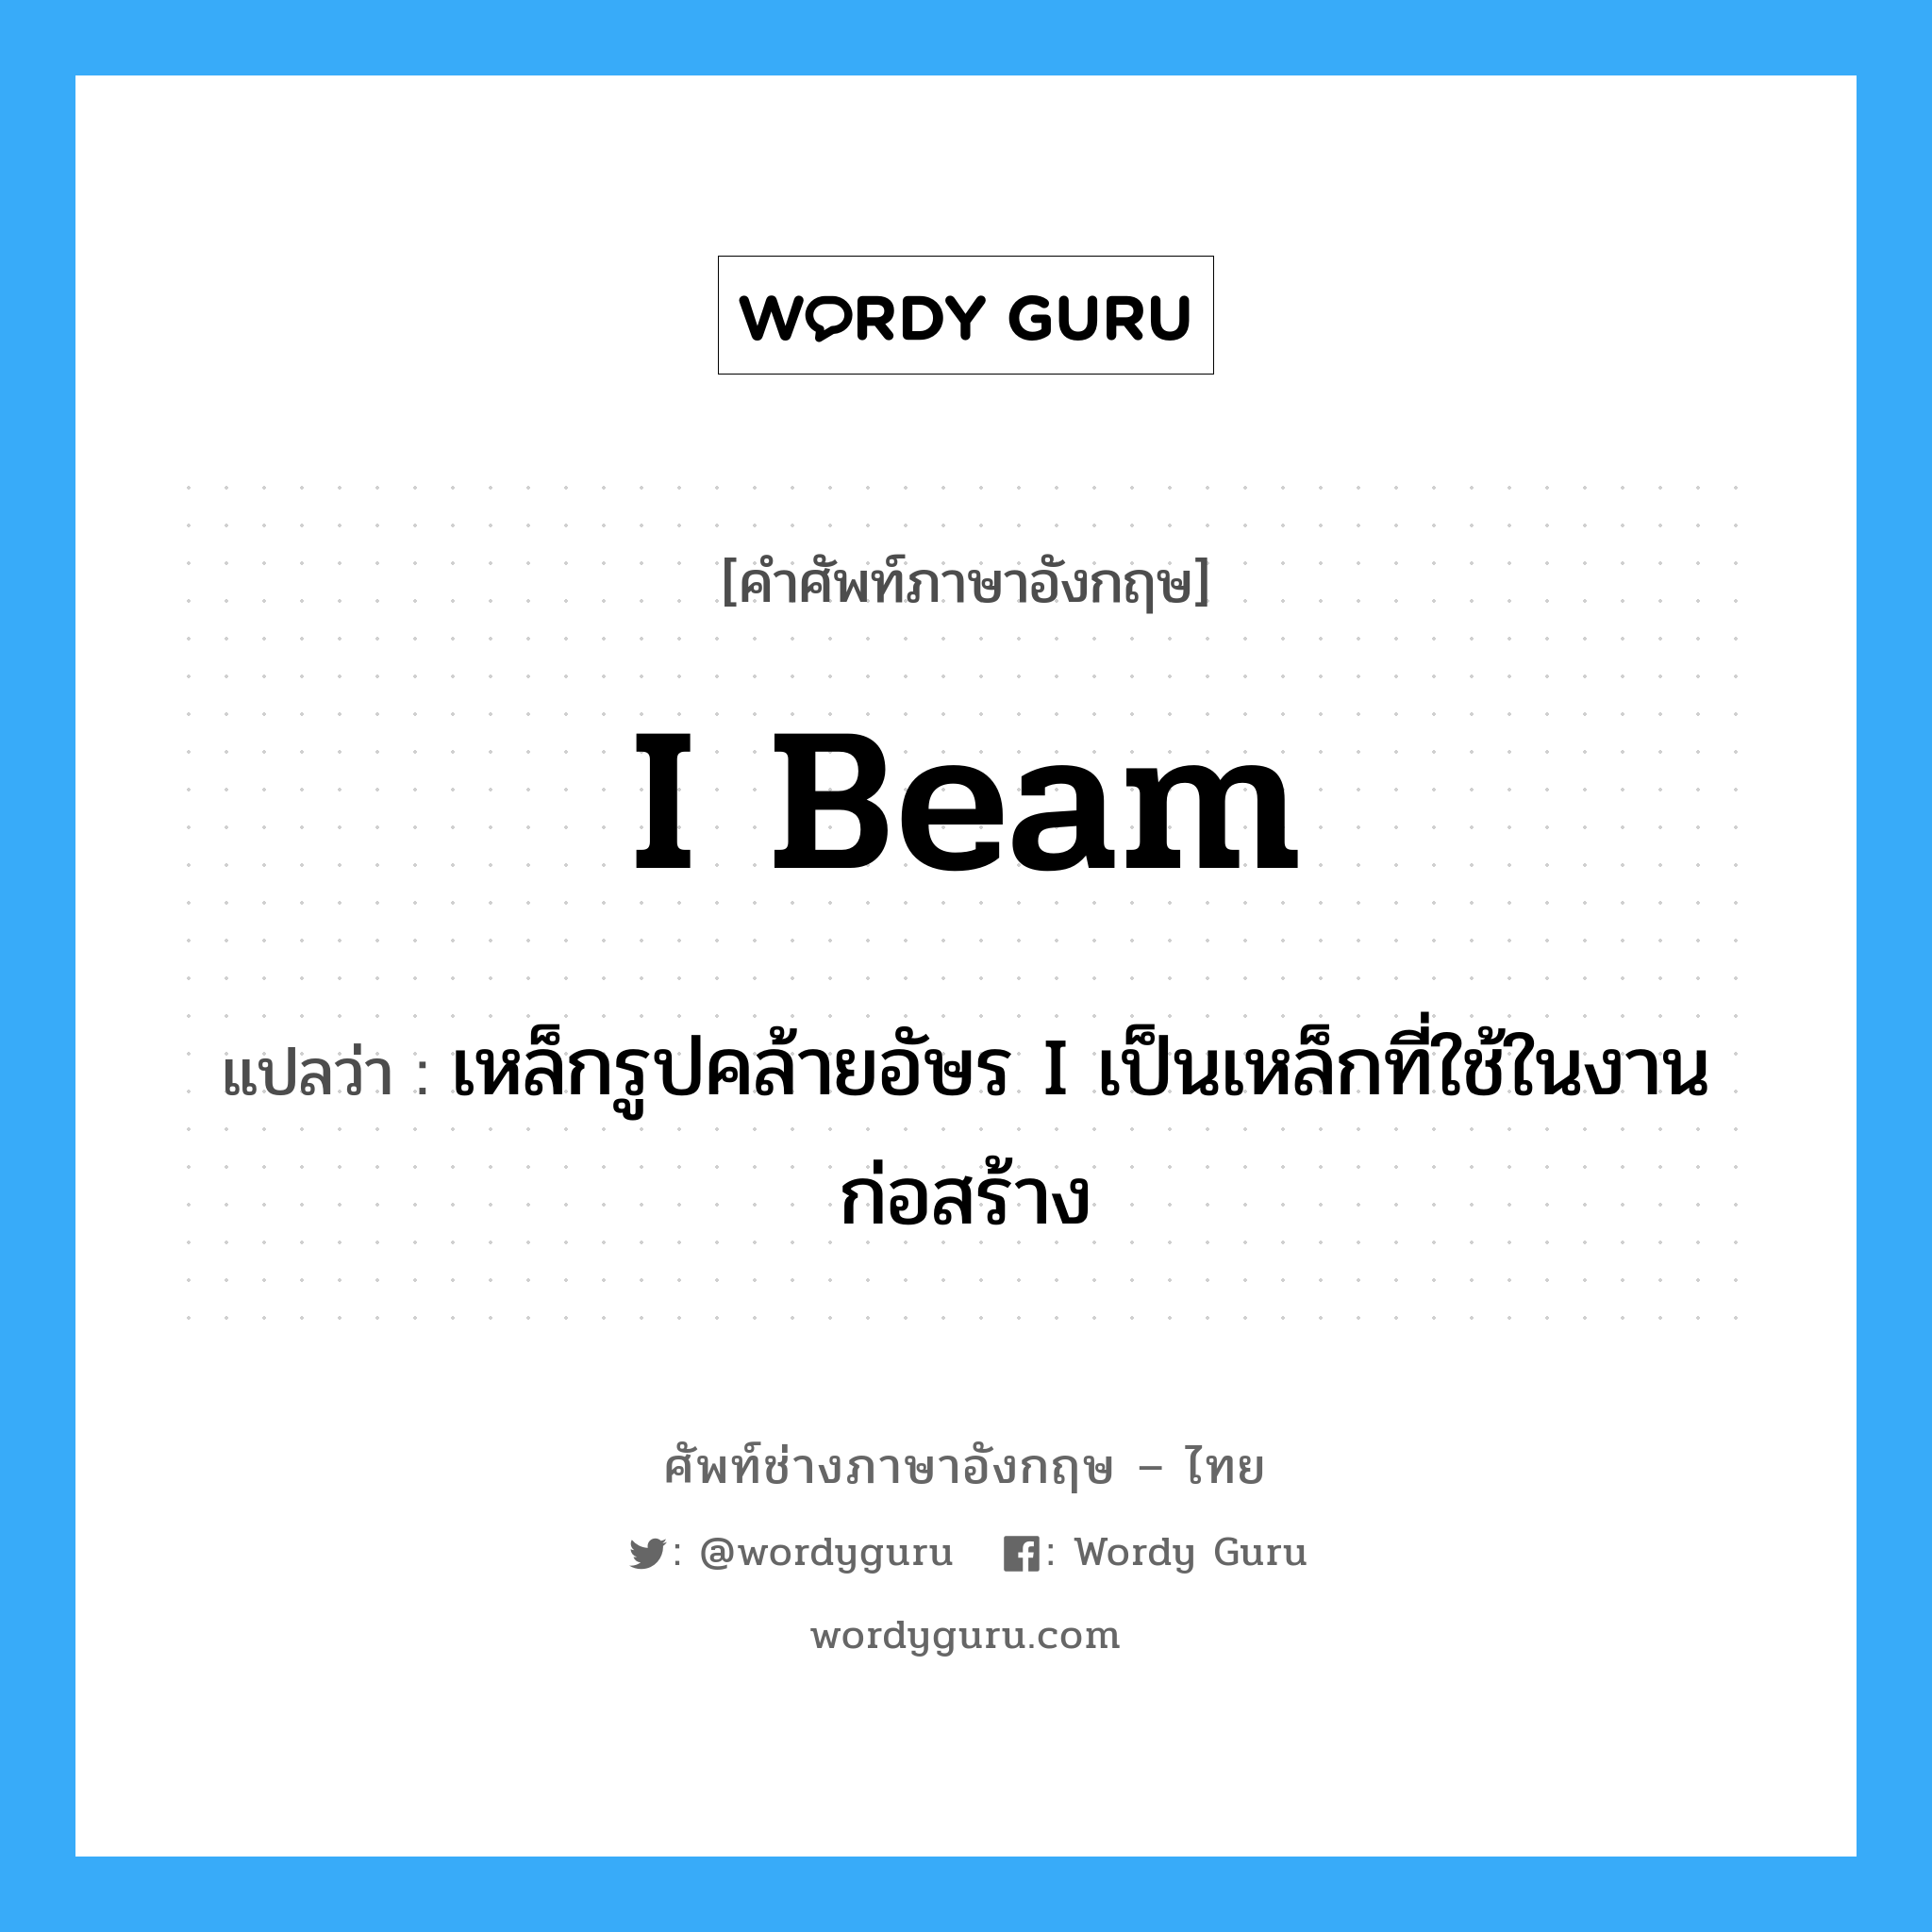 I-beam แปลว่า?, คำศัพท์ช่างภาษาอังกฤษ - ไทย I beam คำศัพท์ภาษาอังกฤษ I beam แปลว่า เหล็กรูปคล้ายอัษร I เป็นเหล็กที่ใช้ในงานก่อสร้าง